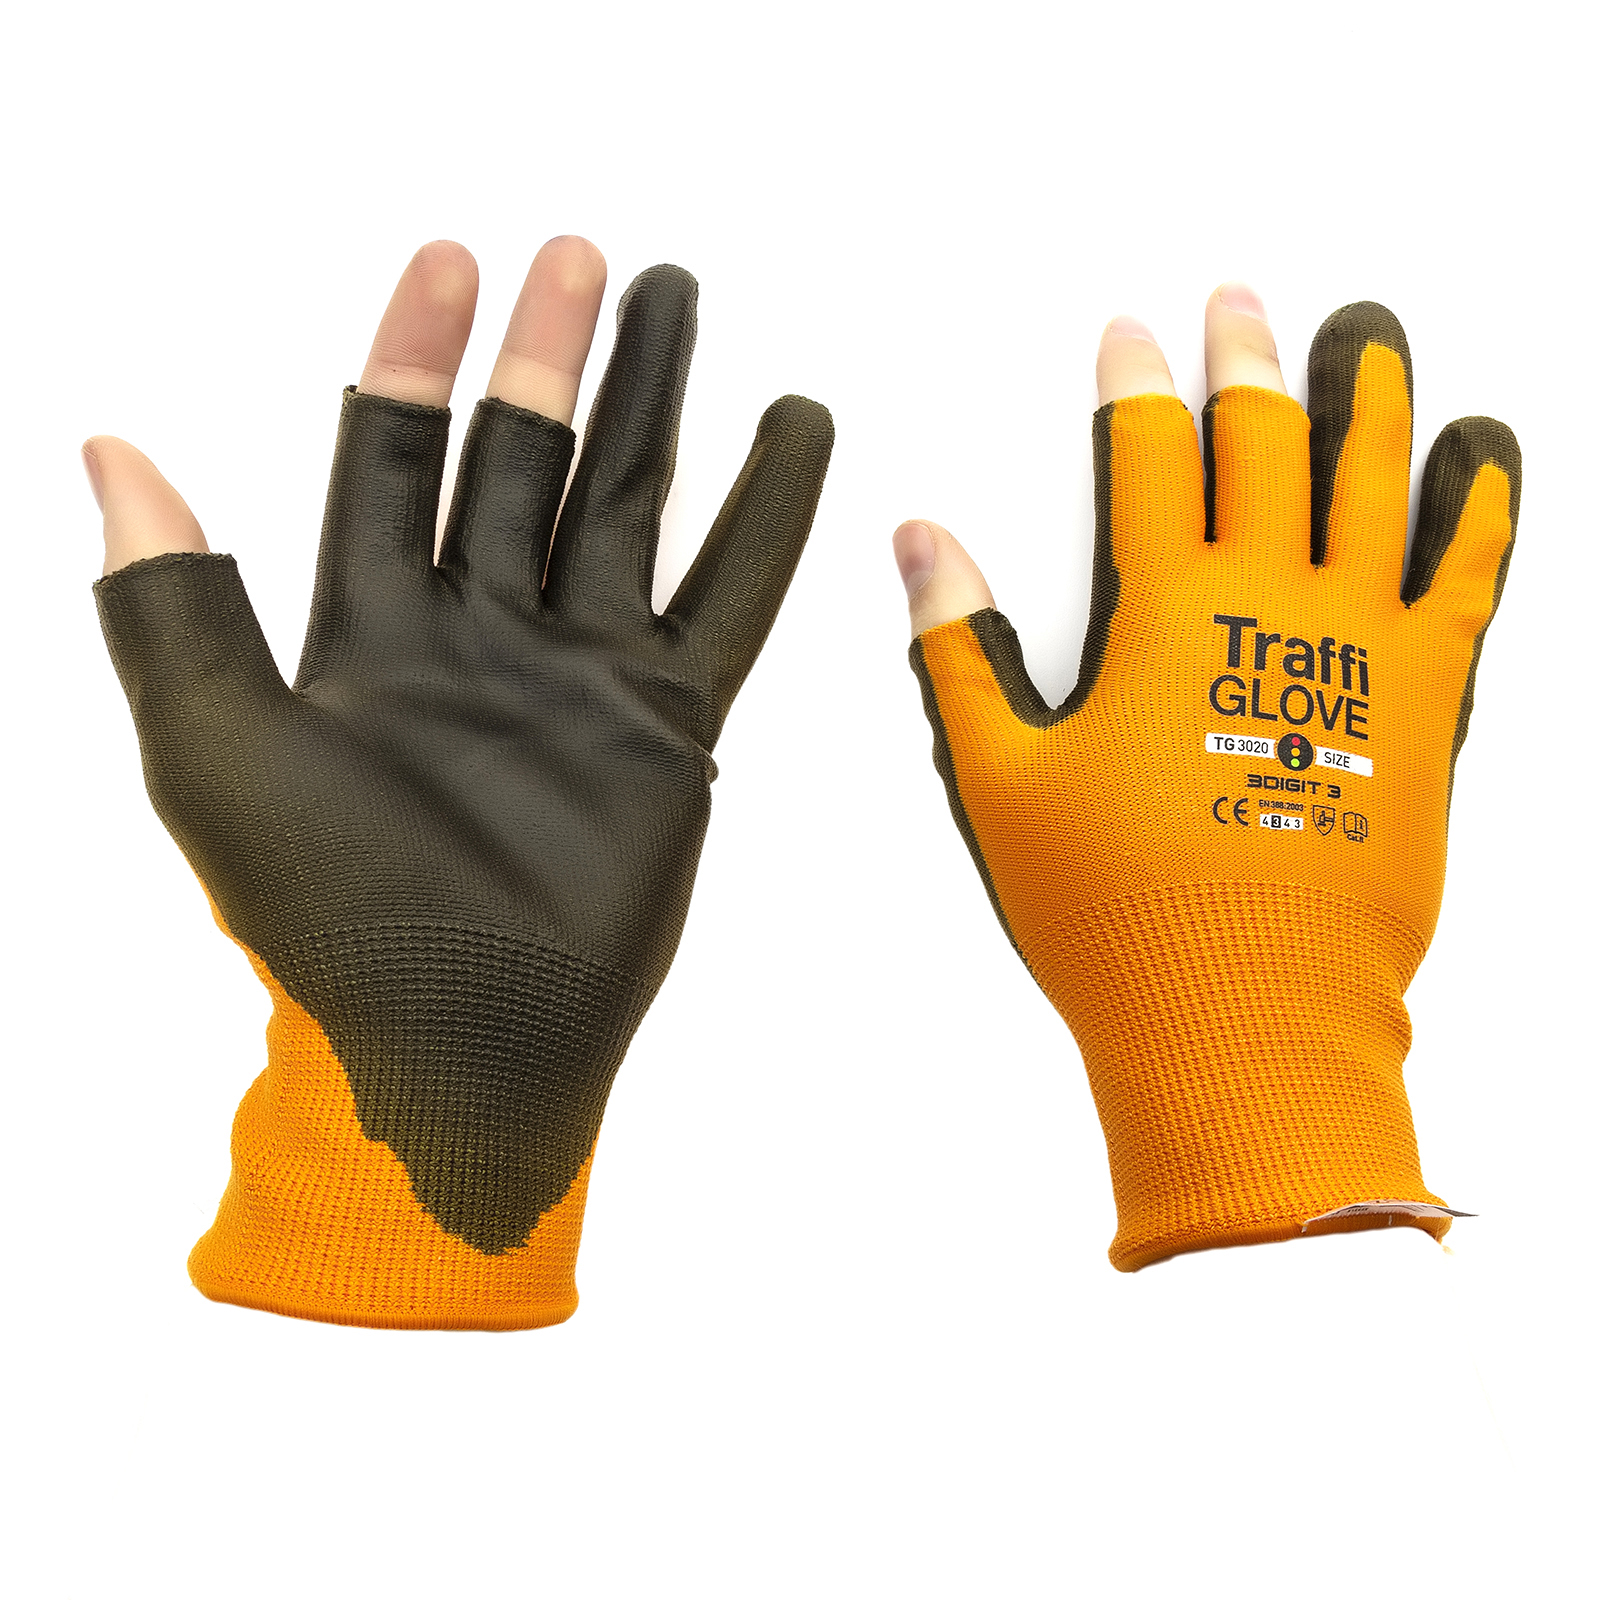 Traffiglove Cut Resistant Level 3 Heavy Duty Safety Work Grip Gardening Gloves 